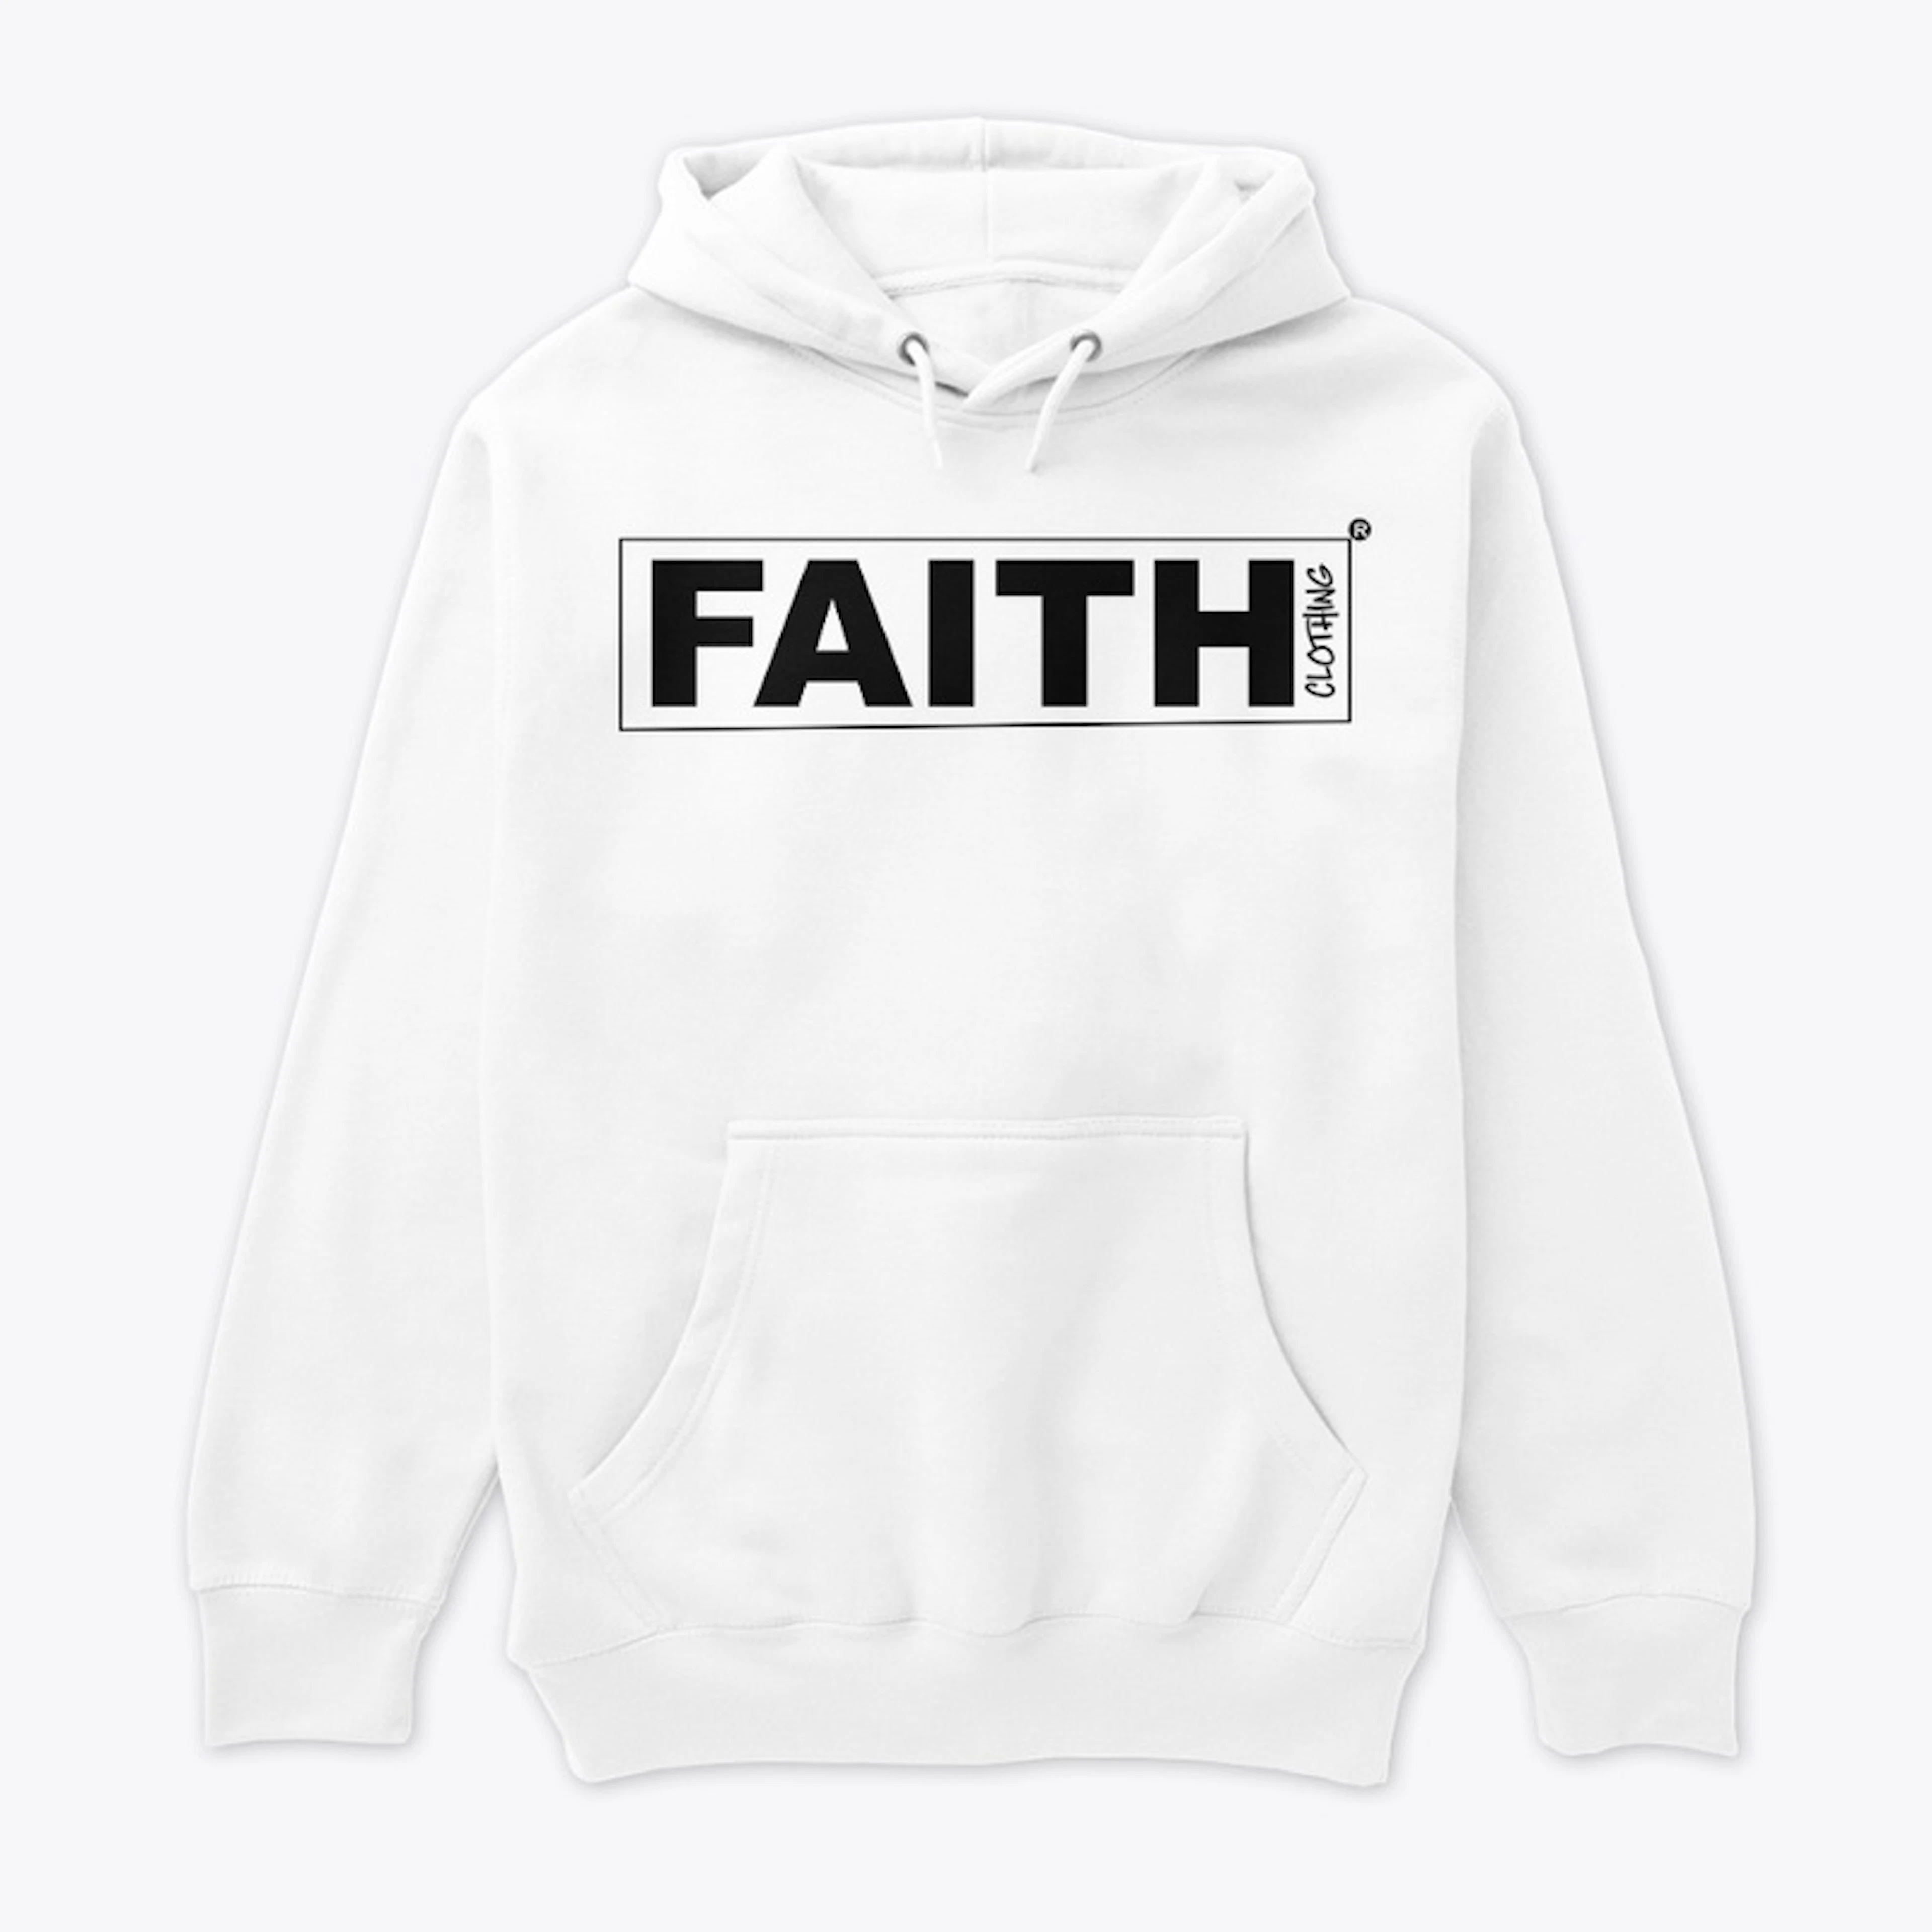 FAITH CLOTHING